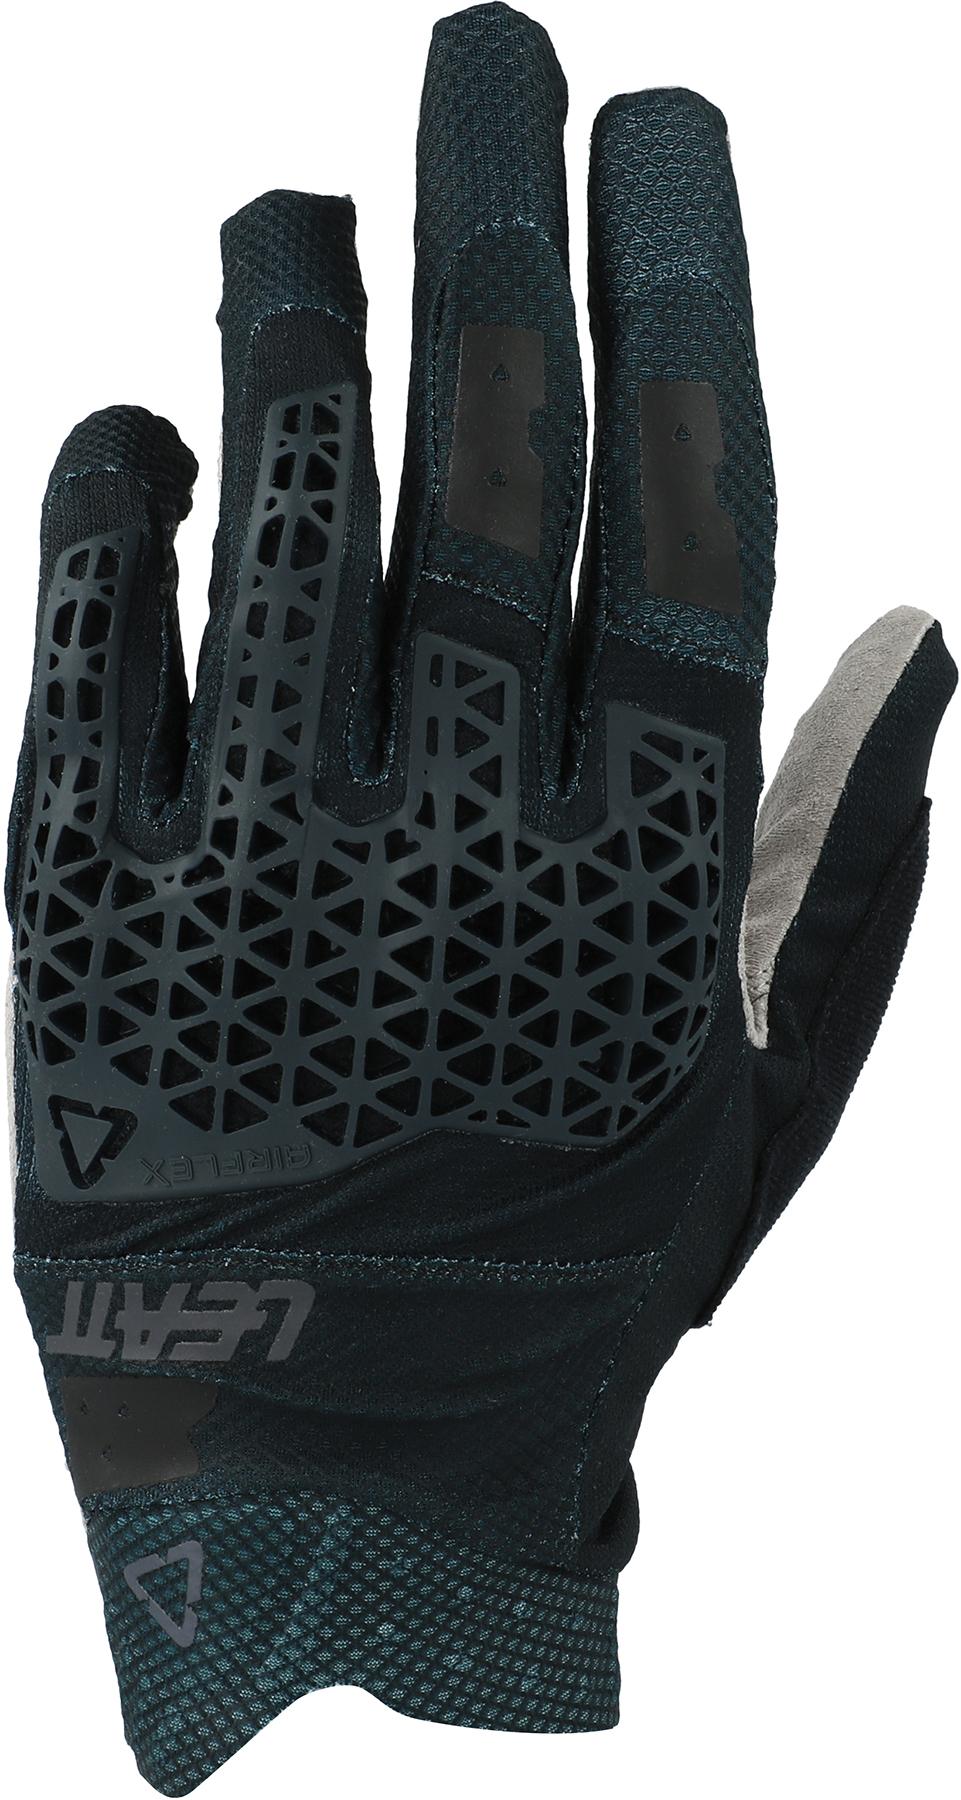 Leatt Mtb 4.0 Lite Gloves - Black